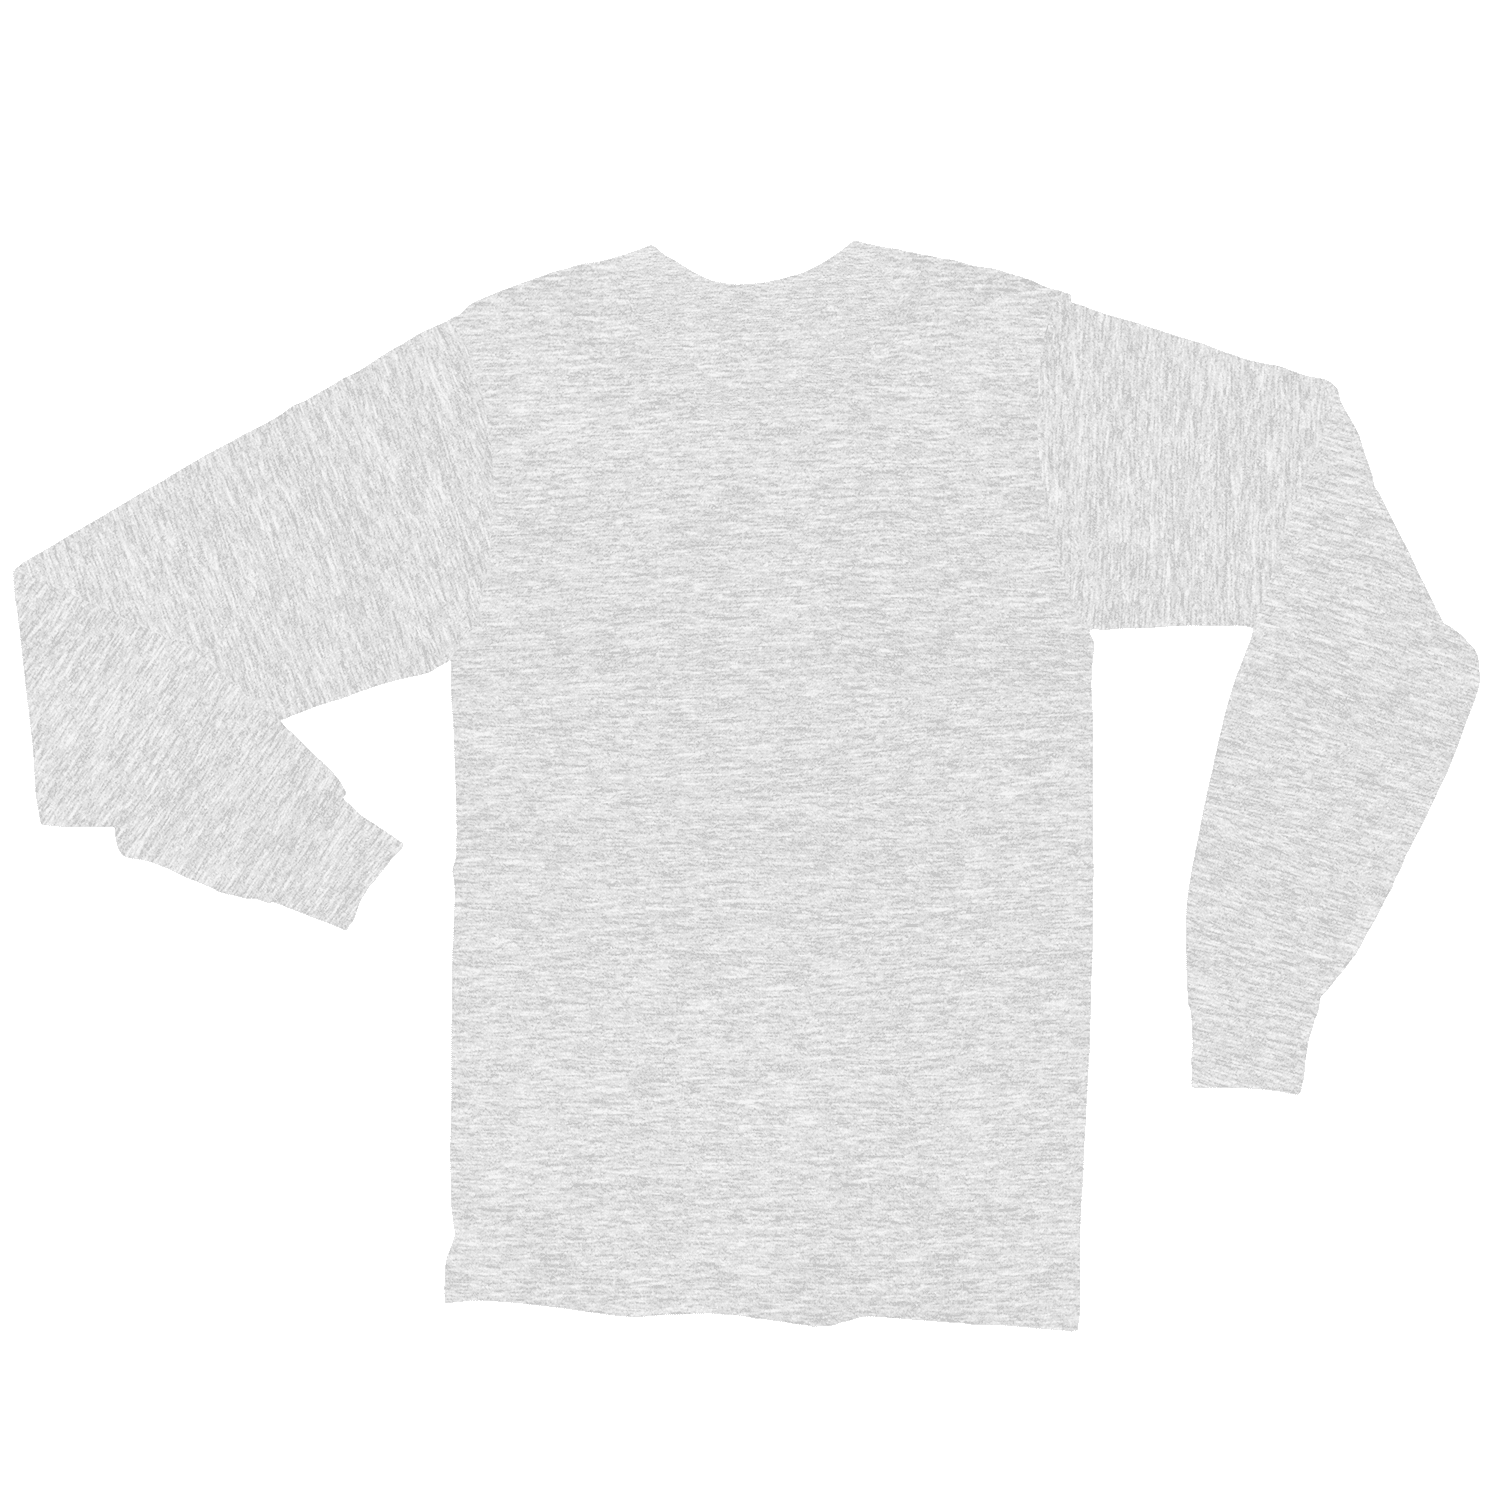 Download Free T Shirt Mockup Generator Photific